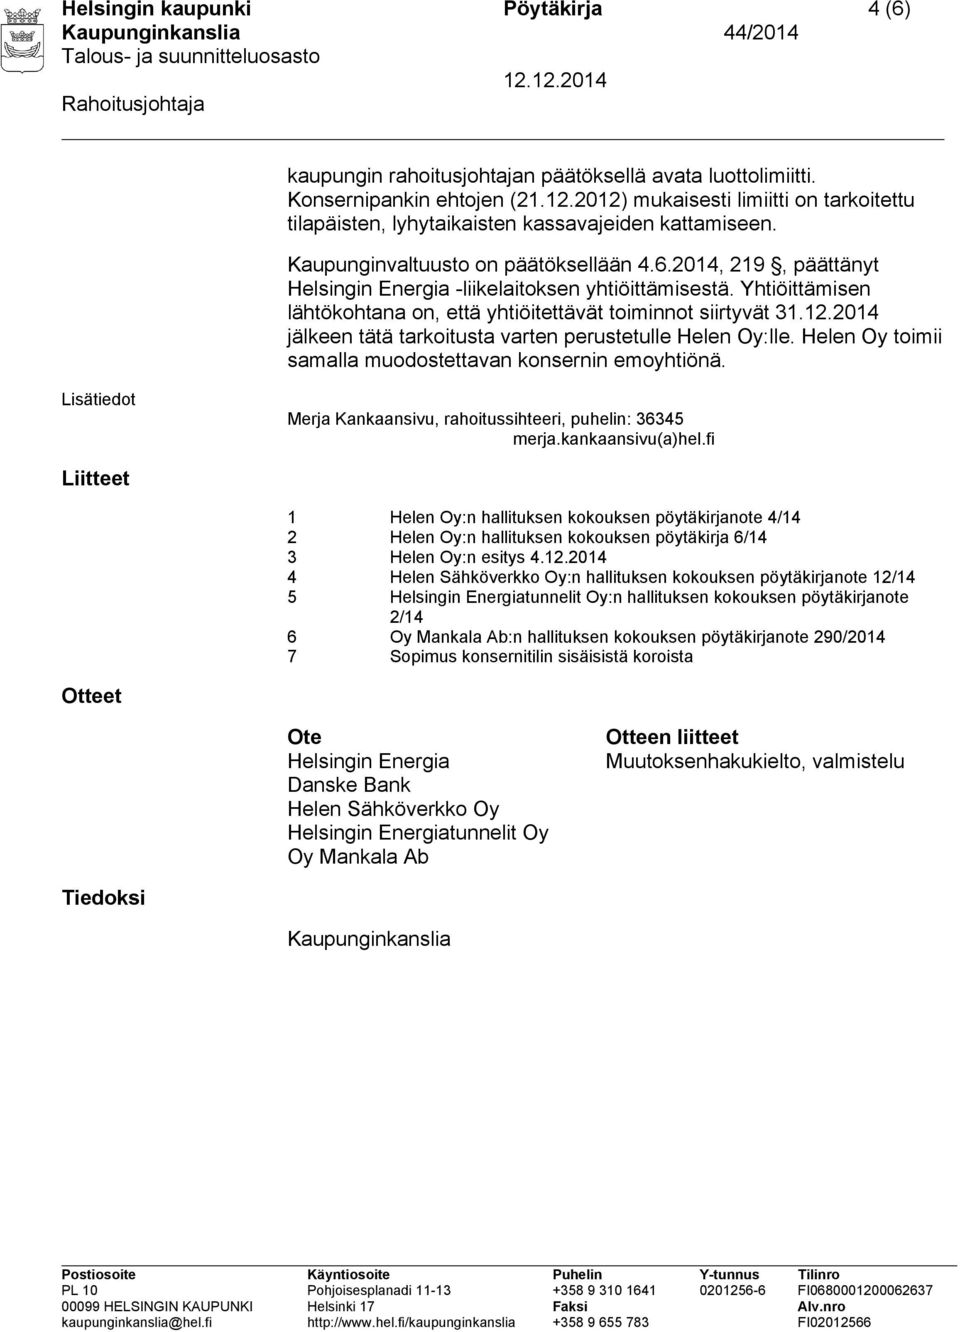 2014, 219, päättänyt Helsingin Energia -liikelaitoksen yhtiöittämisestä. Yhtiöittämisen lähtökohtana on, että yhtiöitettävät toiminnot siirtyvät 31.12.